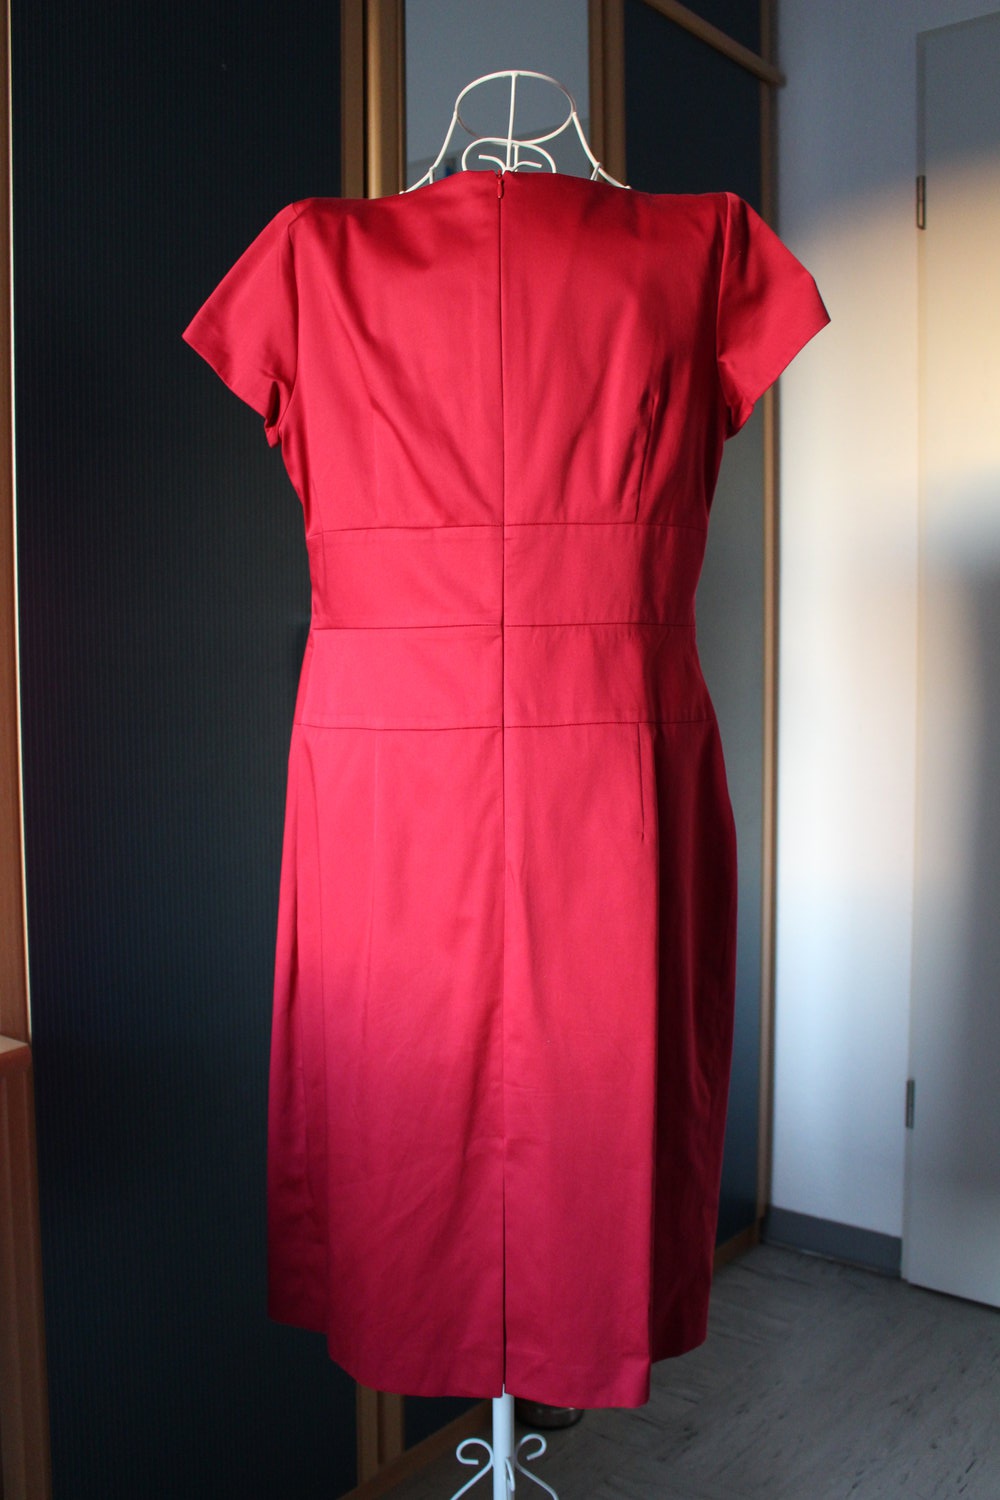 Top-Verkaufstaktik 363. Schönes Kleid von Daniel Gr. Hechter/Paris/, 42, fuchsia-rot